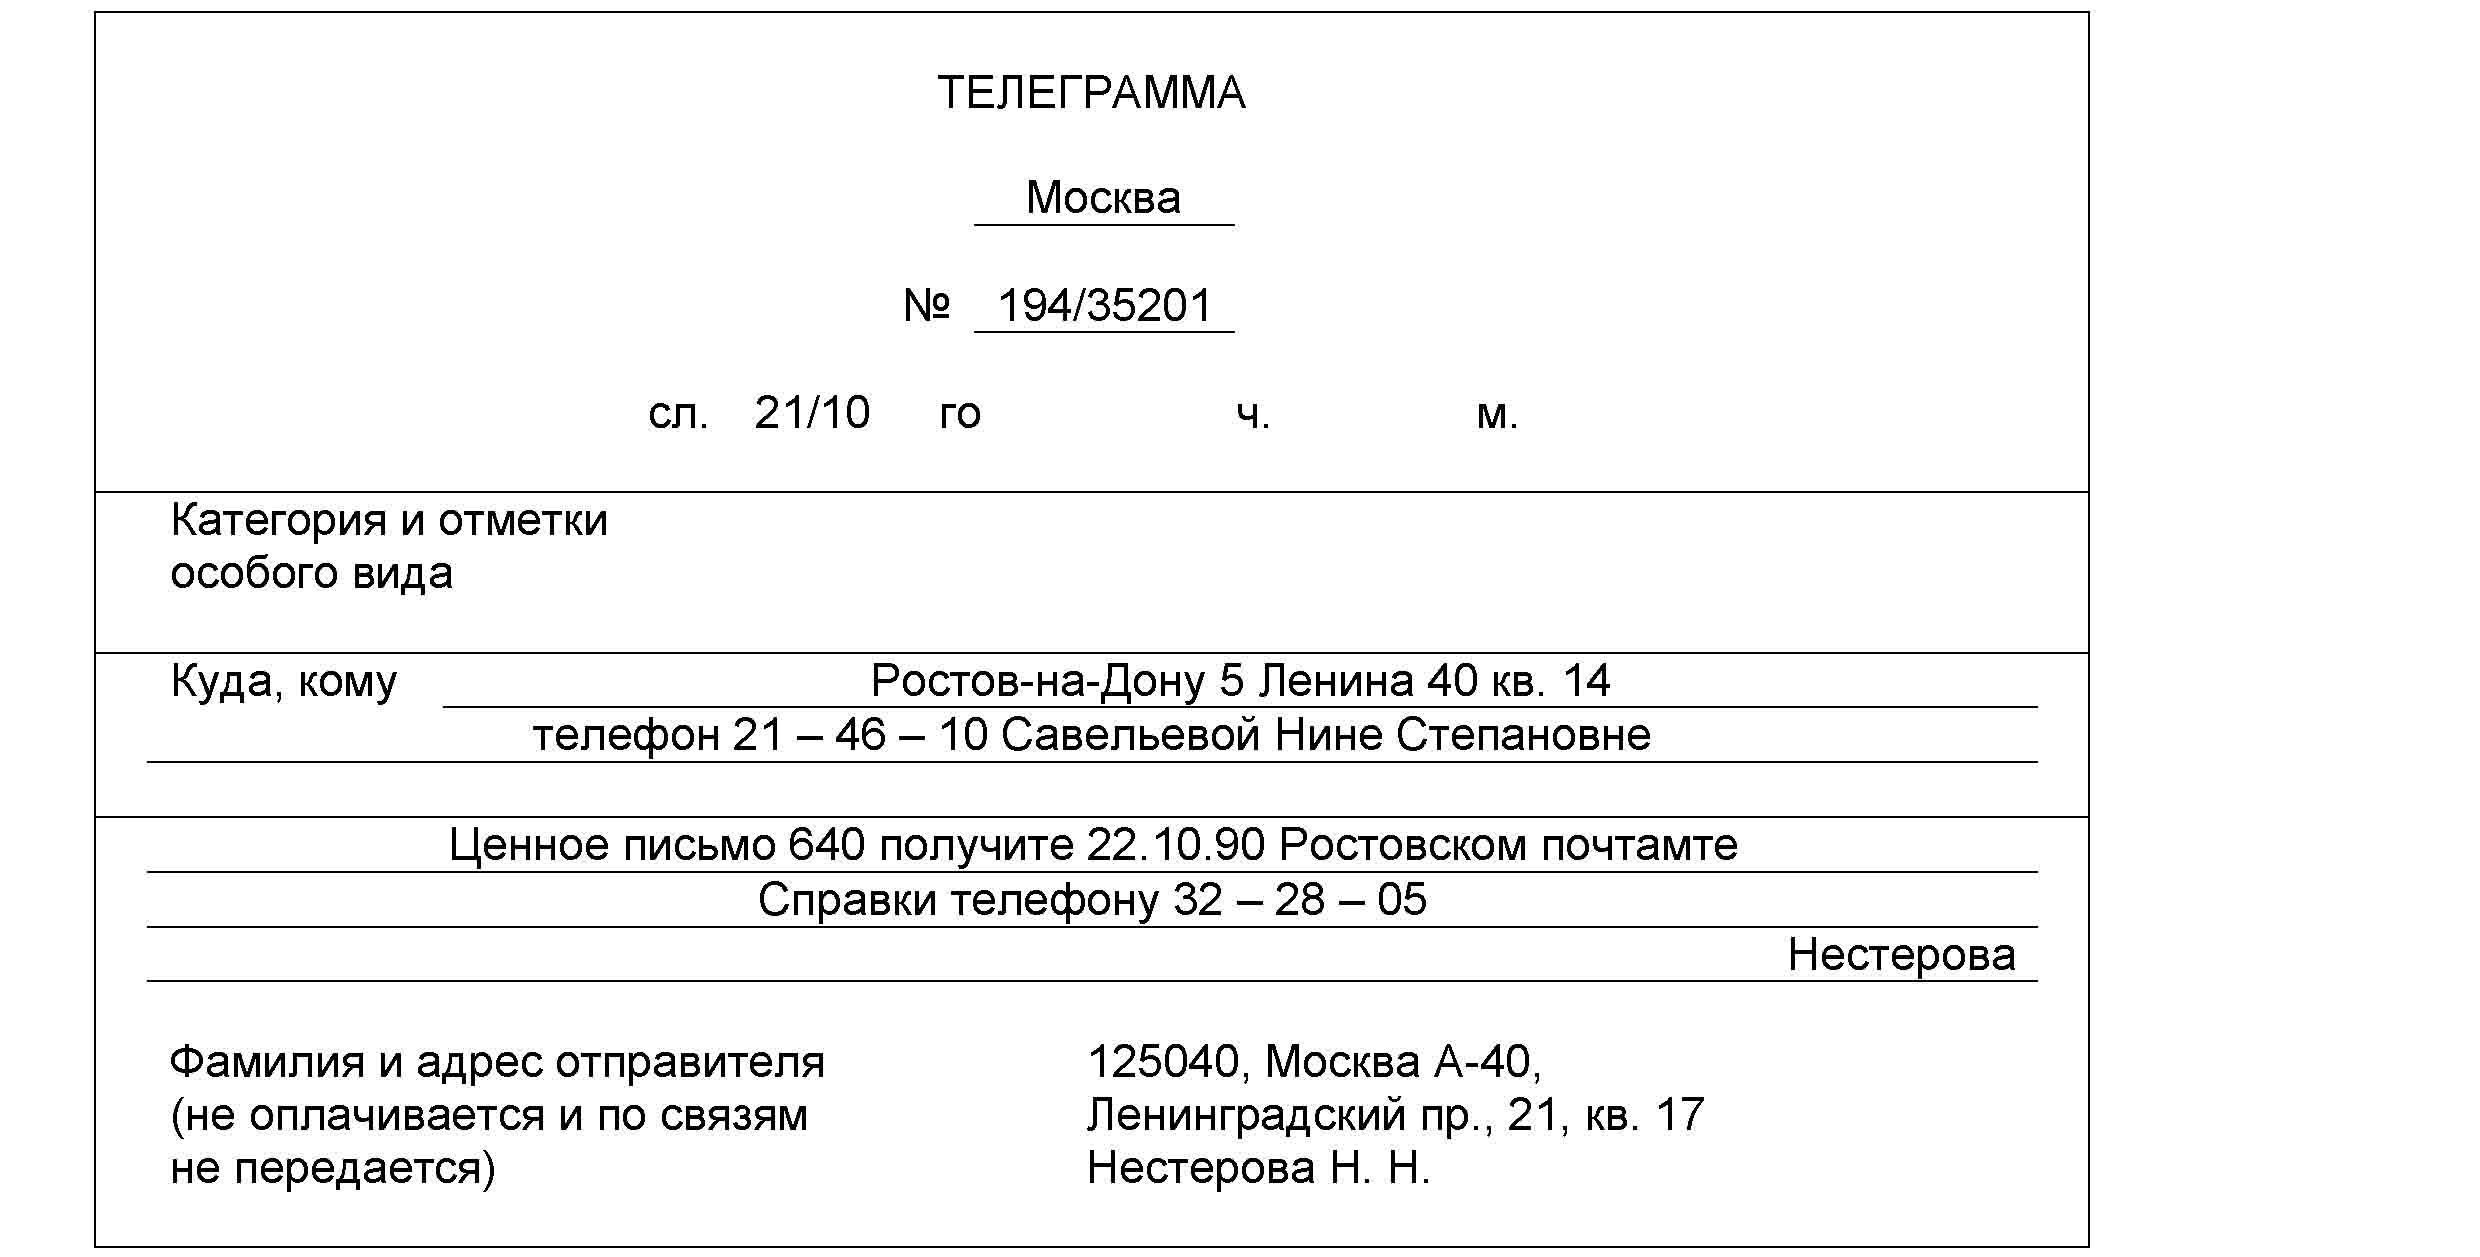 Телеграмма как пишется на русском языке фото 109